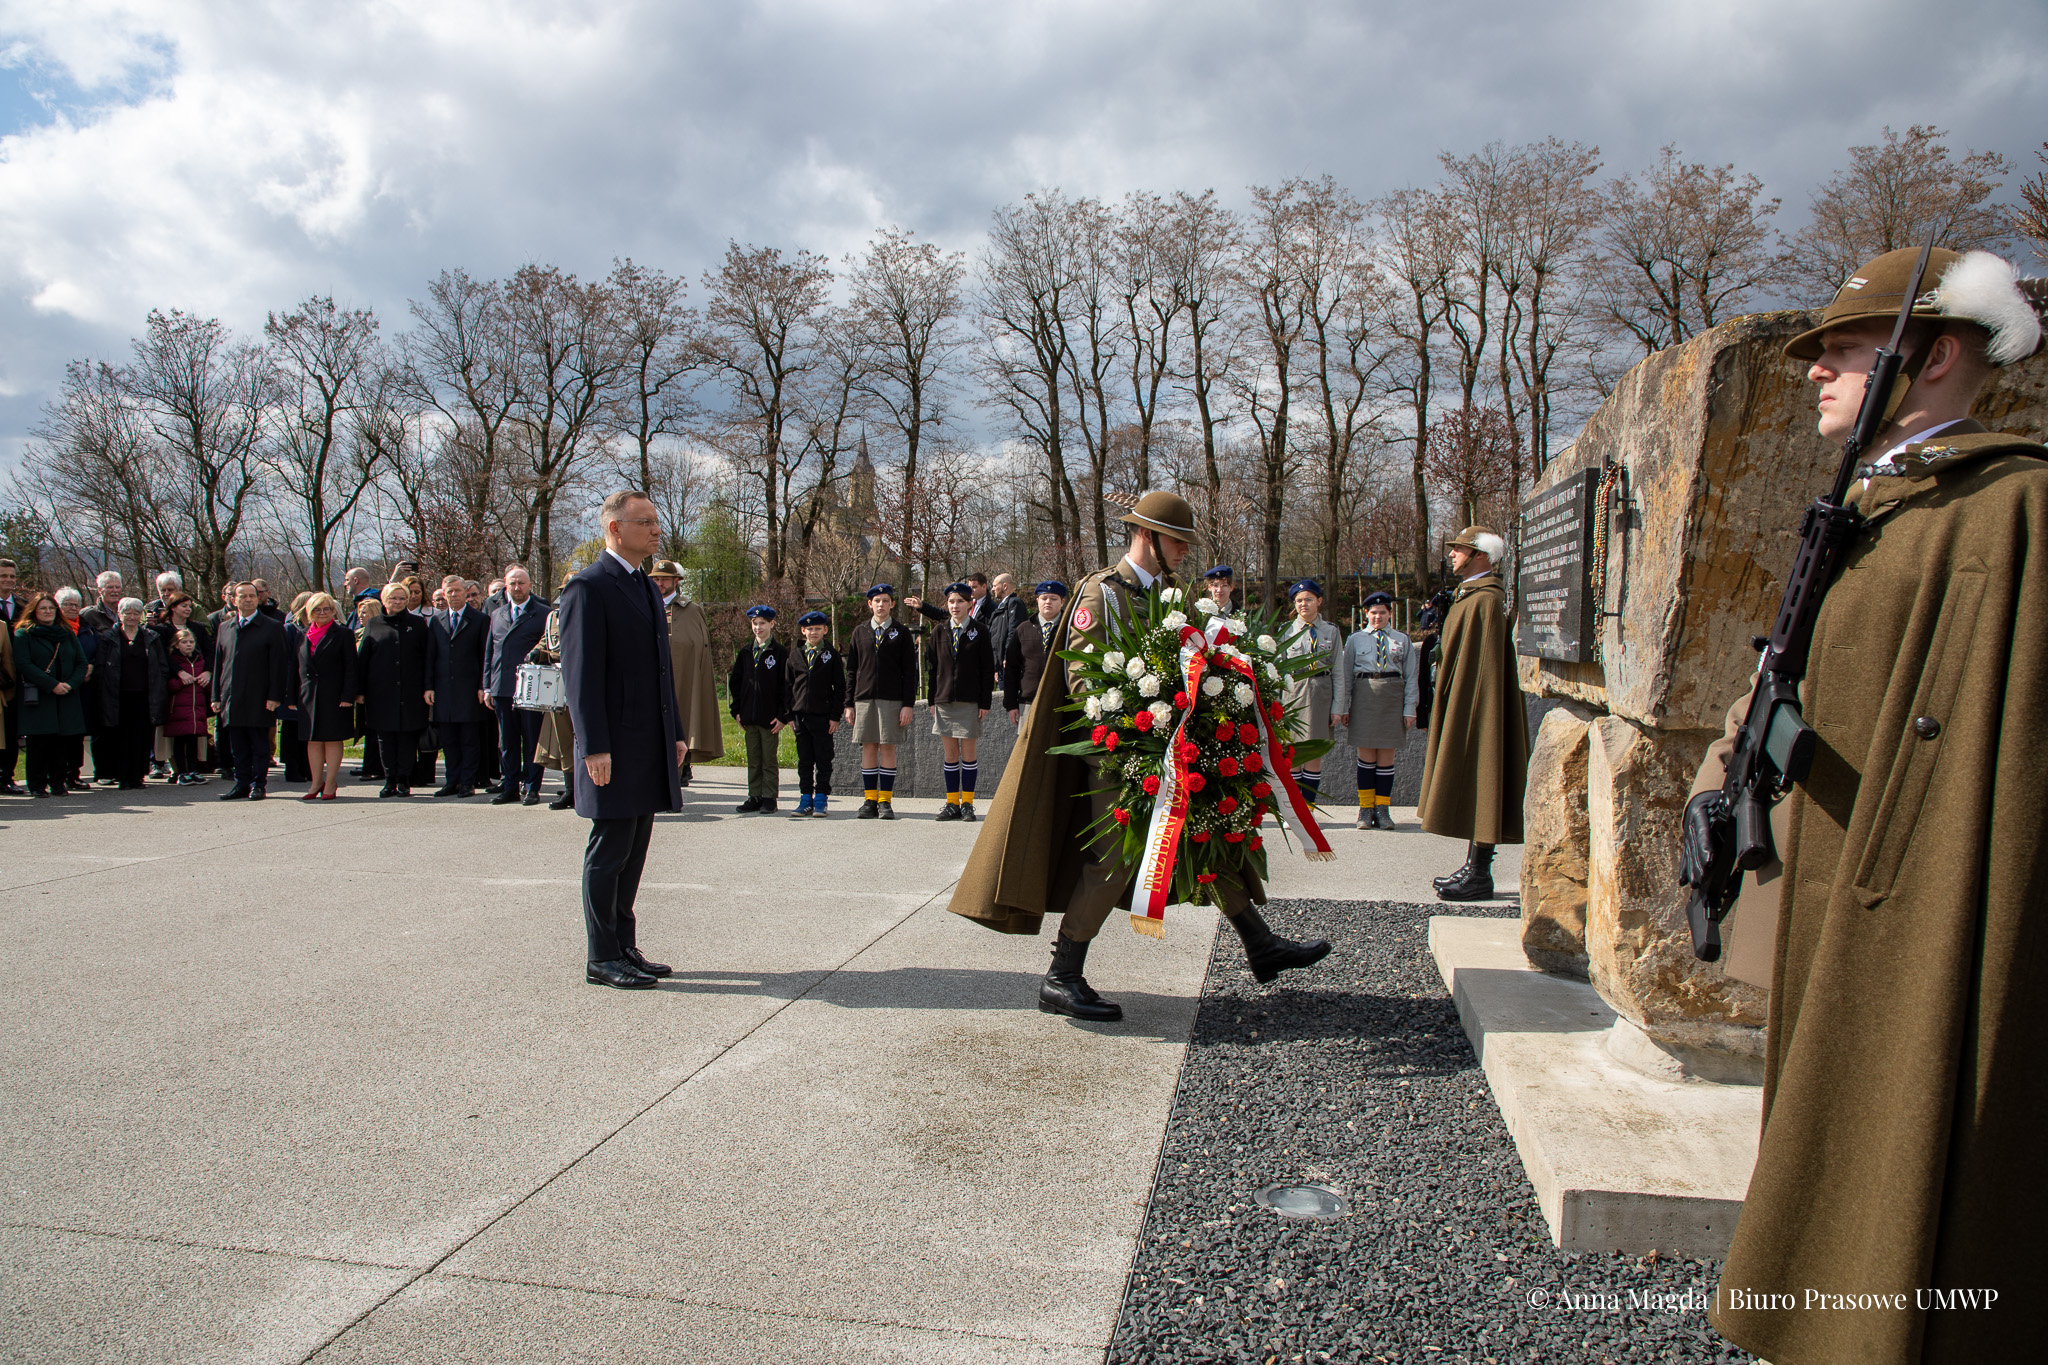 Prezydent Polski składa kwiaty pod pomnikiem.